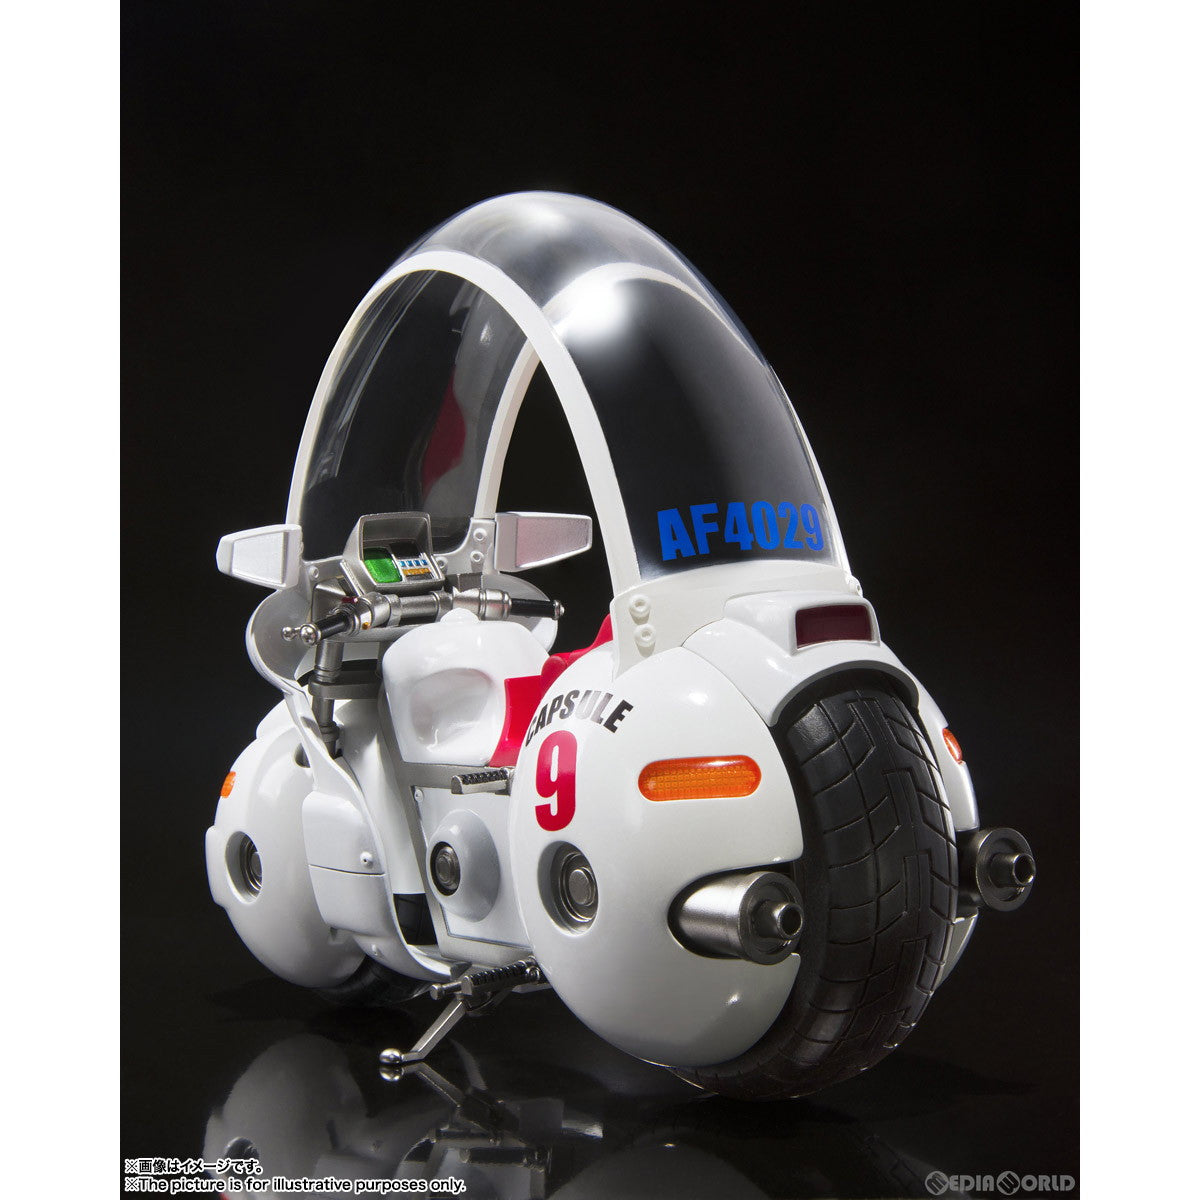 【新品即納】[FIG](再販)S.H.Figuarts(フィギュアーツ) ブルマのバイク-ホイポイカプセル No.9- ドラゴンボールシリーズ 完成品 可動フィギュア バンダイスピリッツ(20240430)